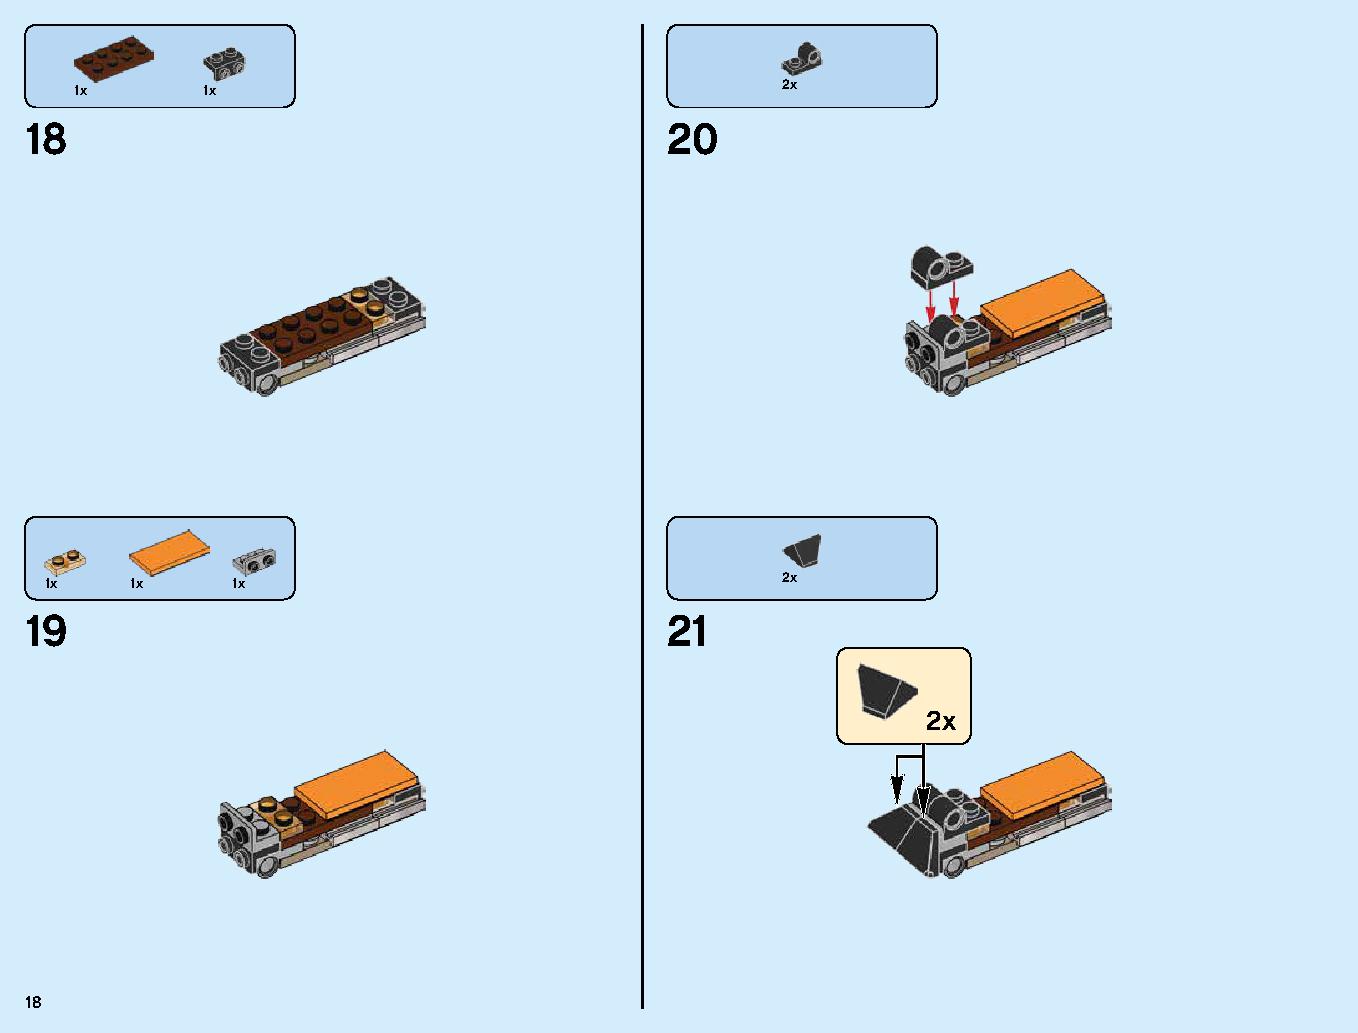 ハンティング・デスストライカー 70654 レゴの商品情報 レゴの説明書・組立方法 18 page